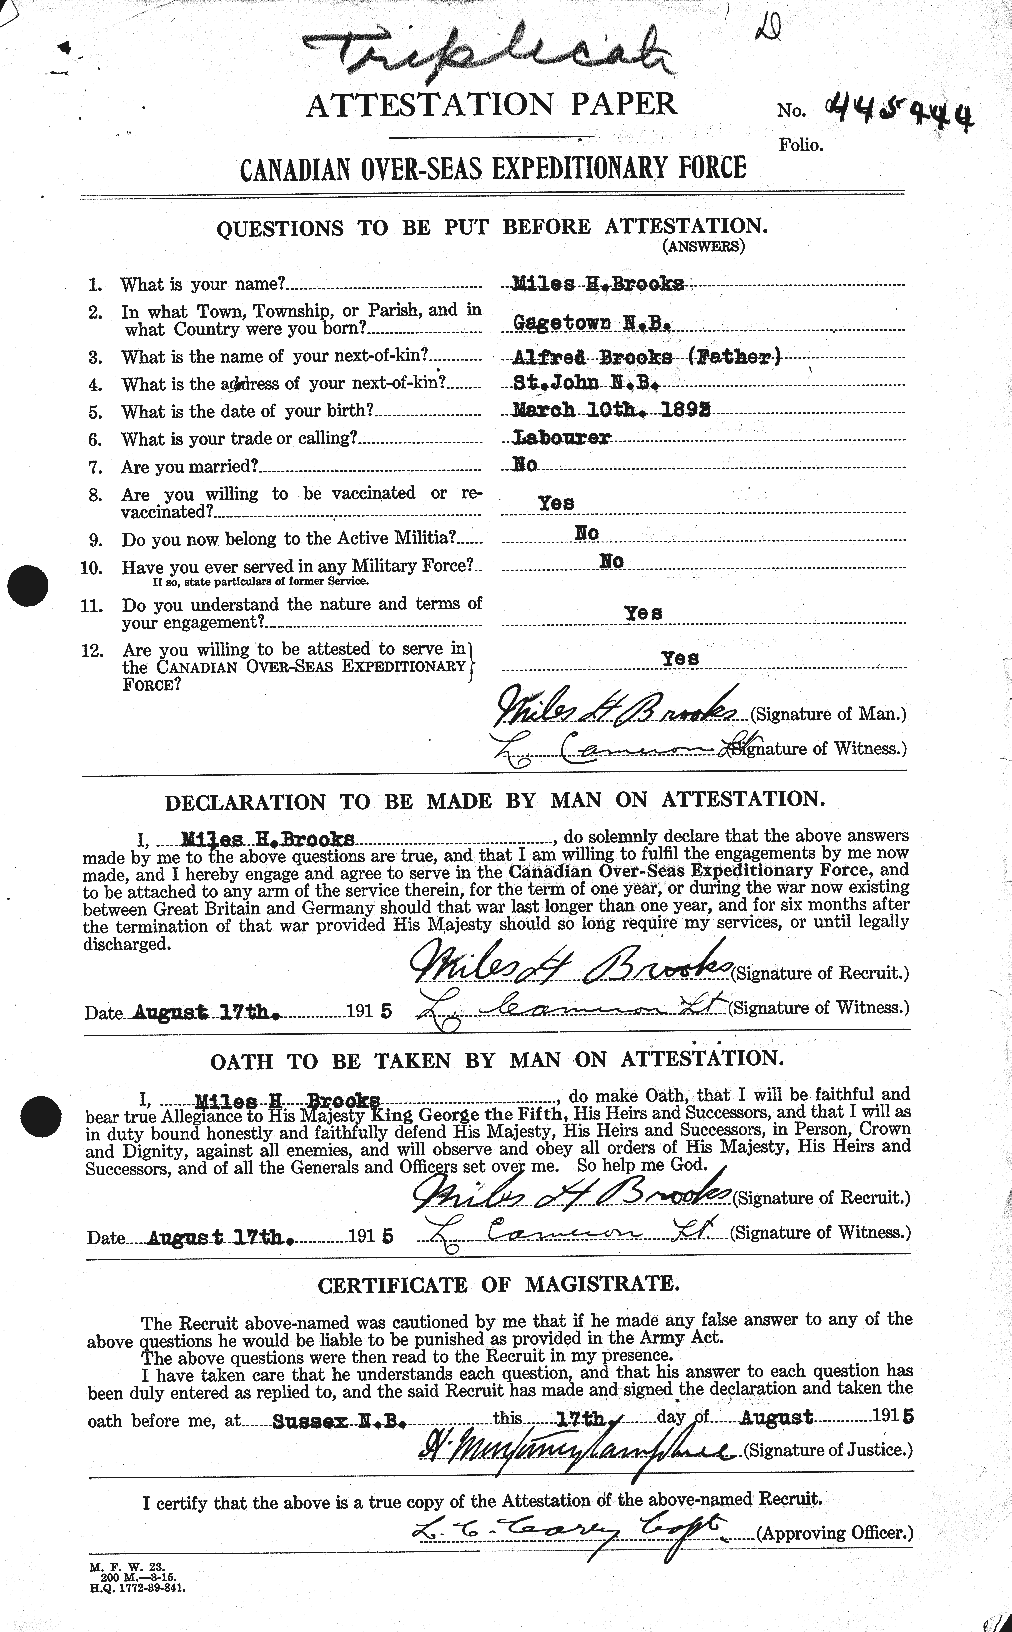 Dossiers du Personnel de la Première Guerre mondiale - CEC 264645a